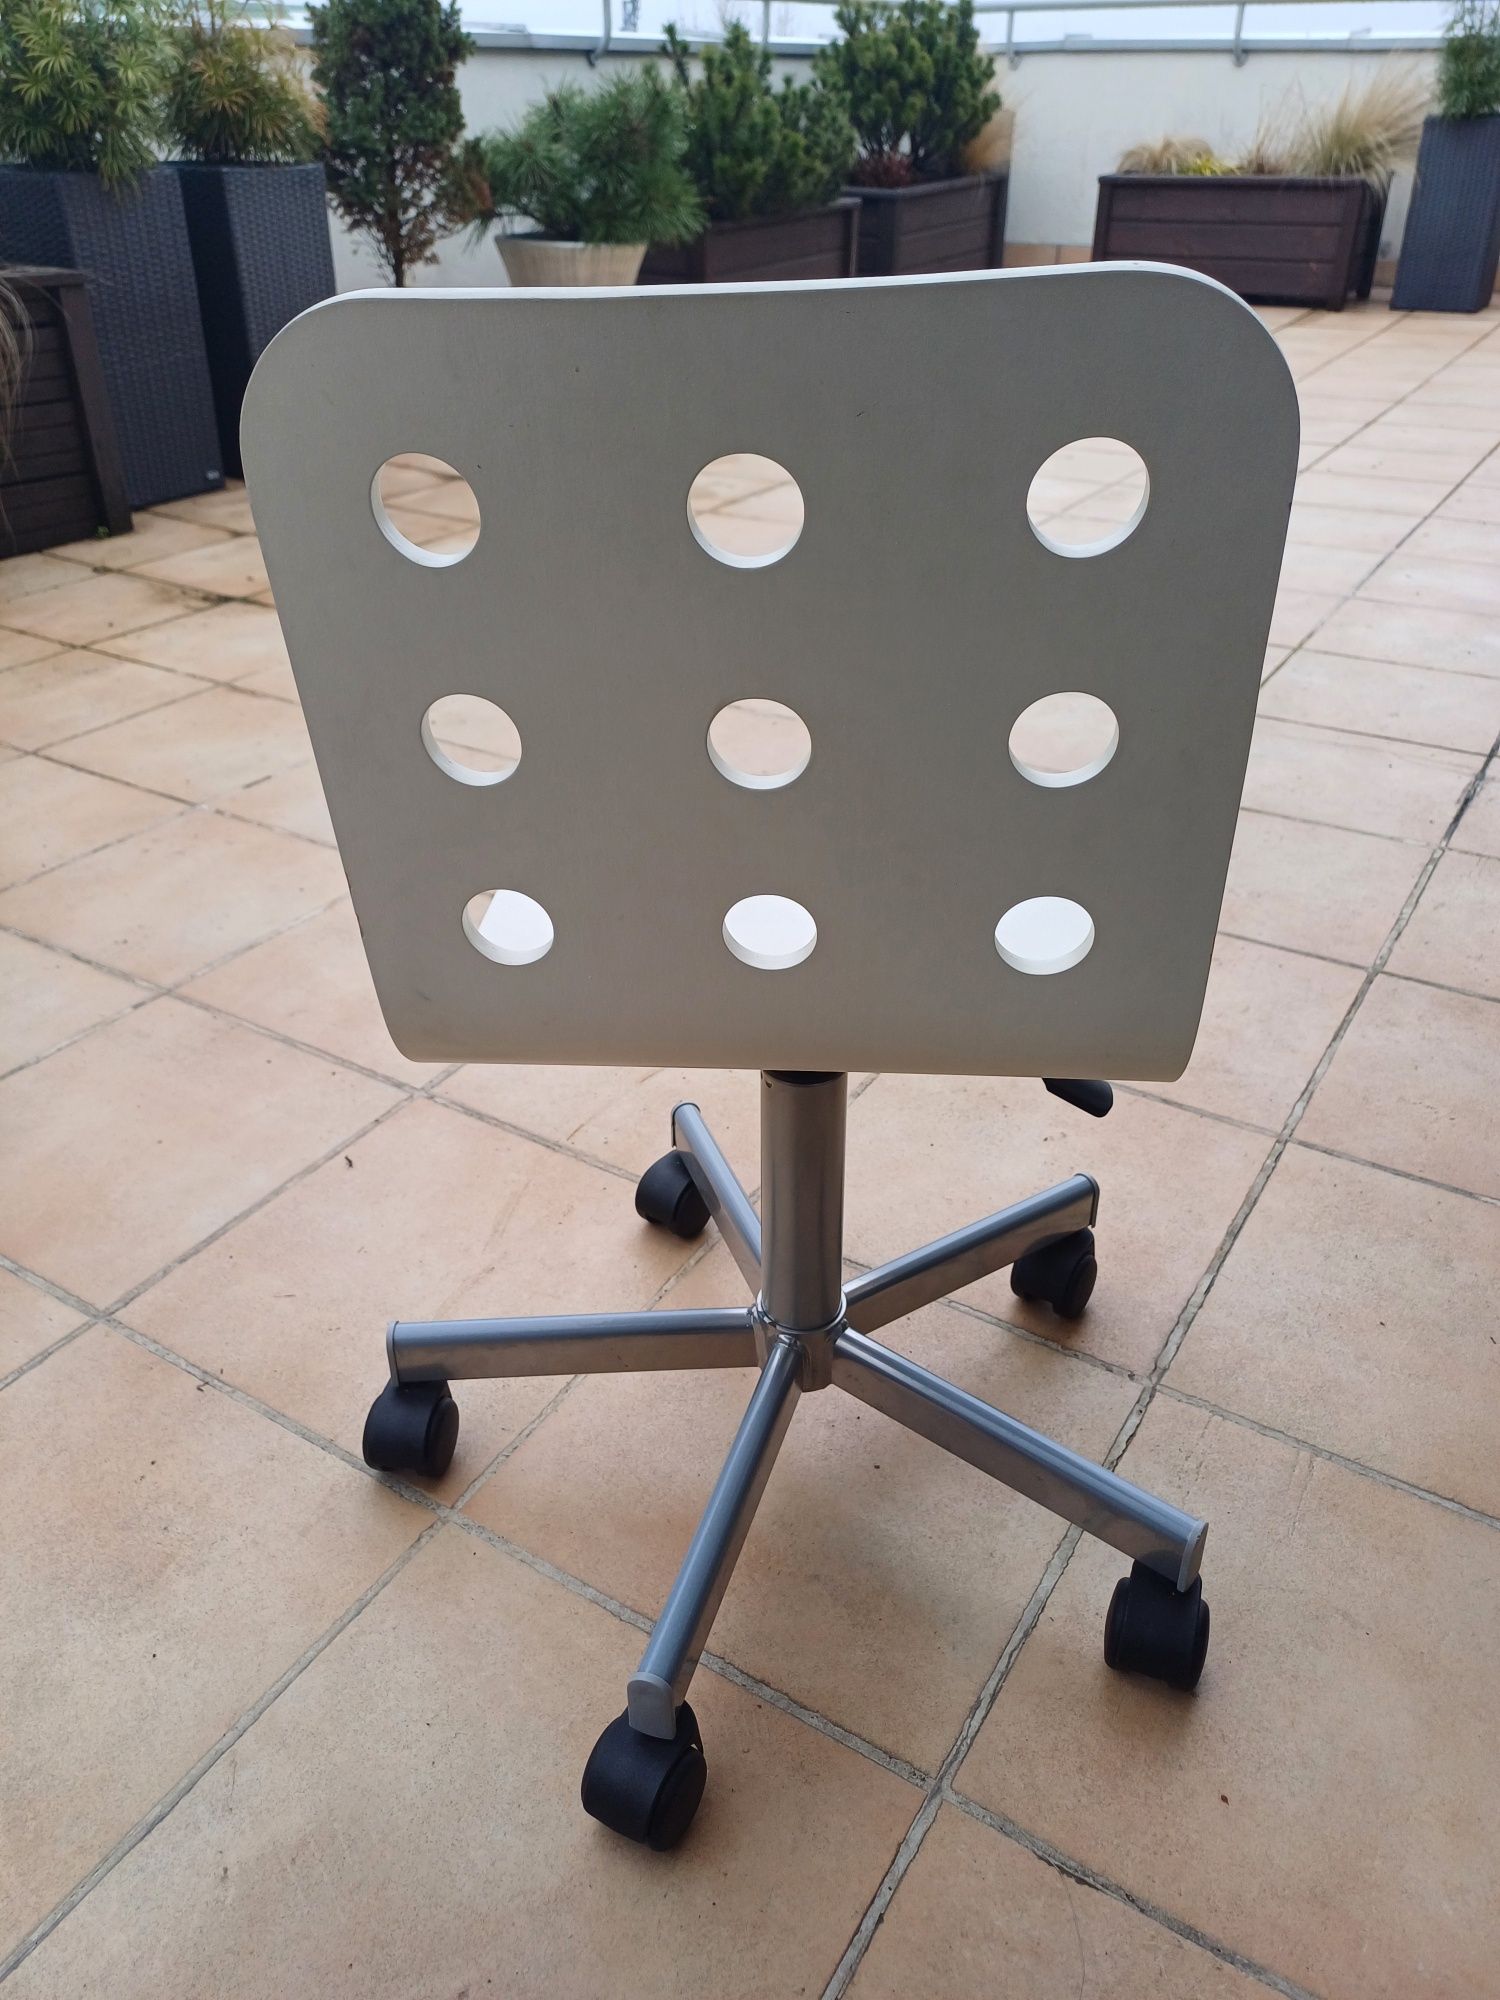 Krzesło do biurka dla dziecka IKEA